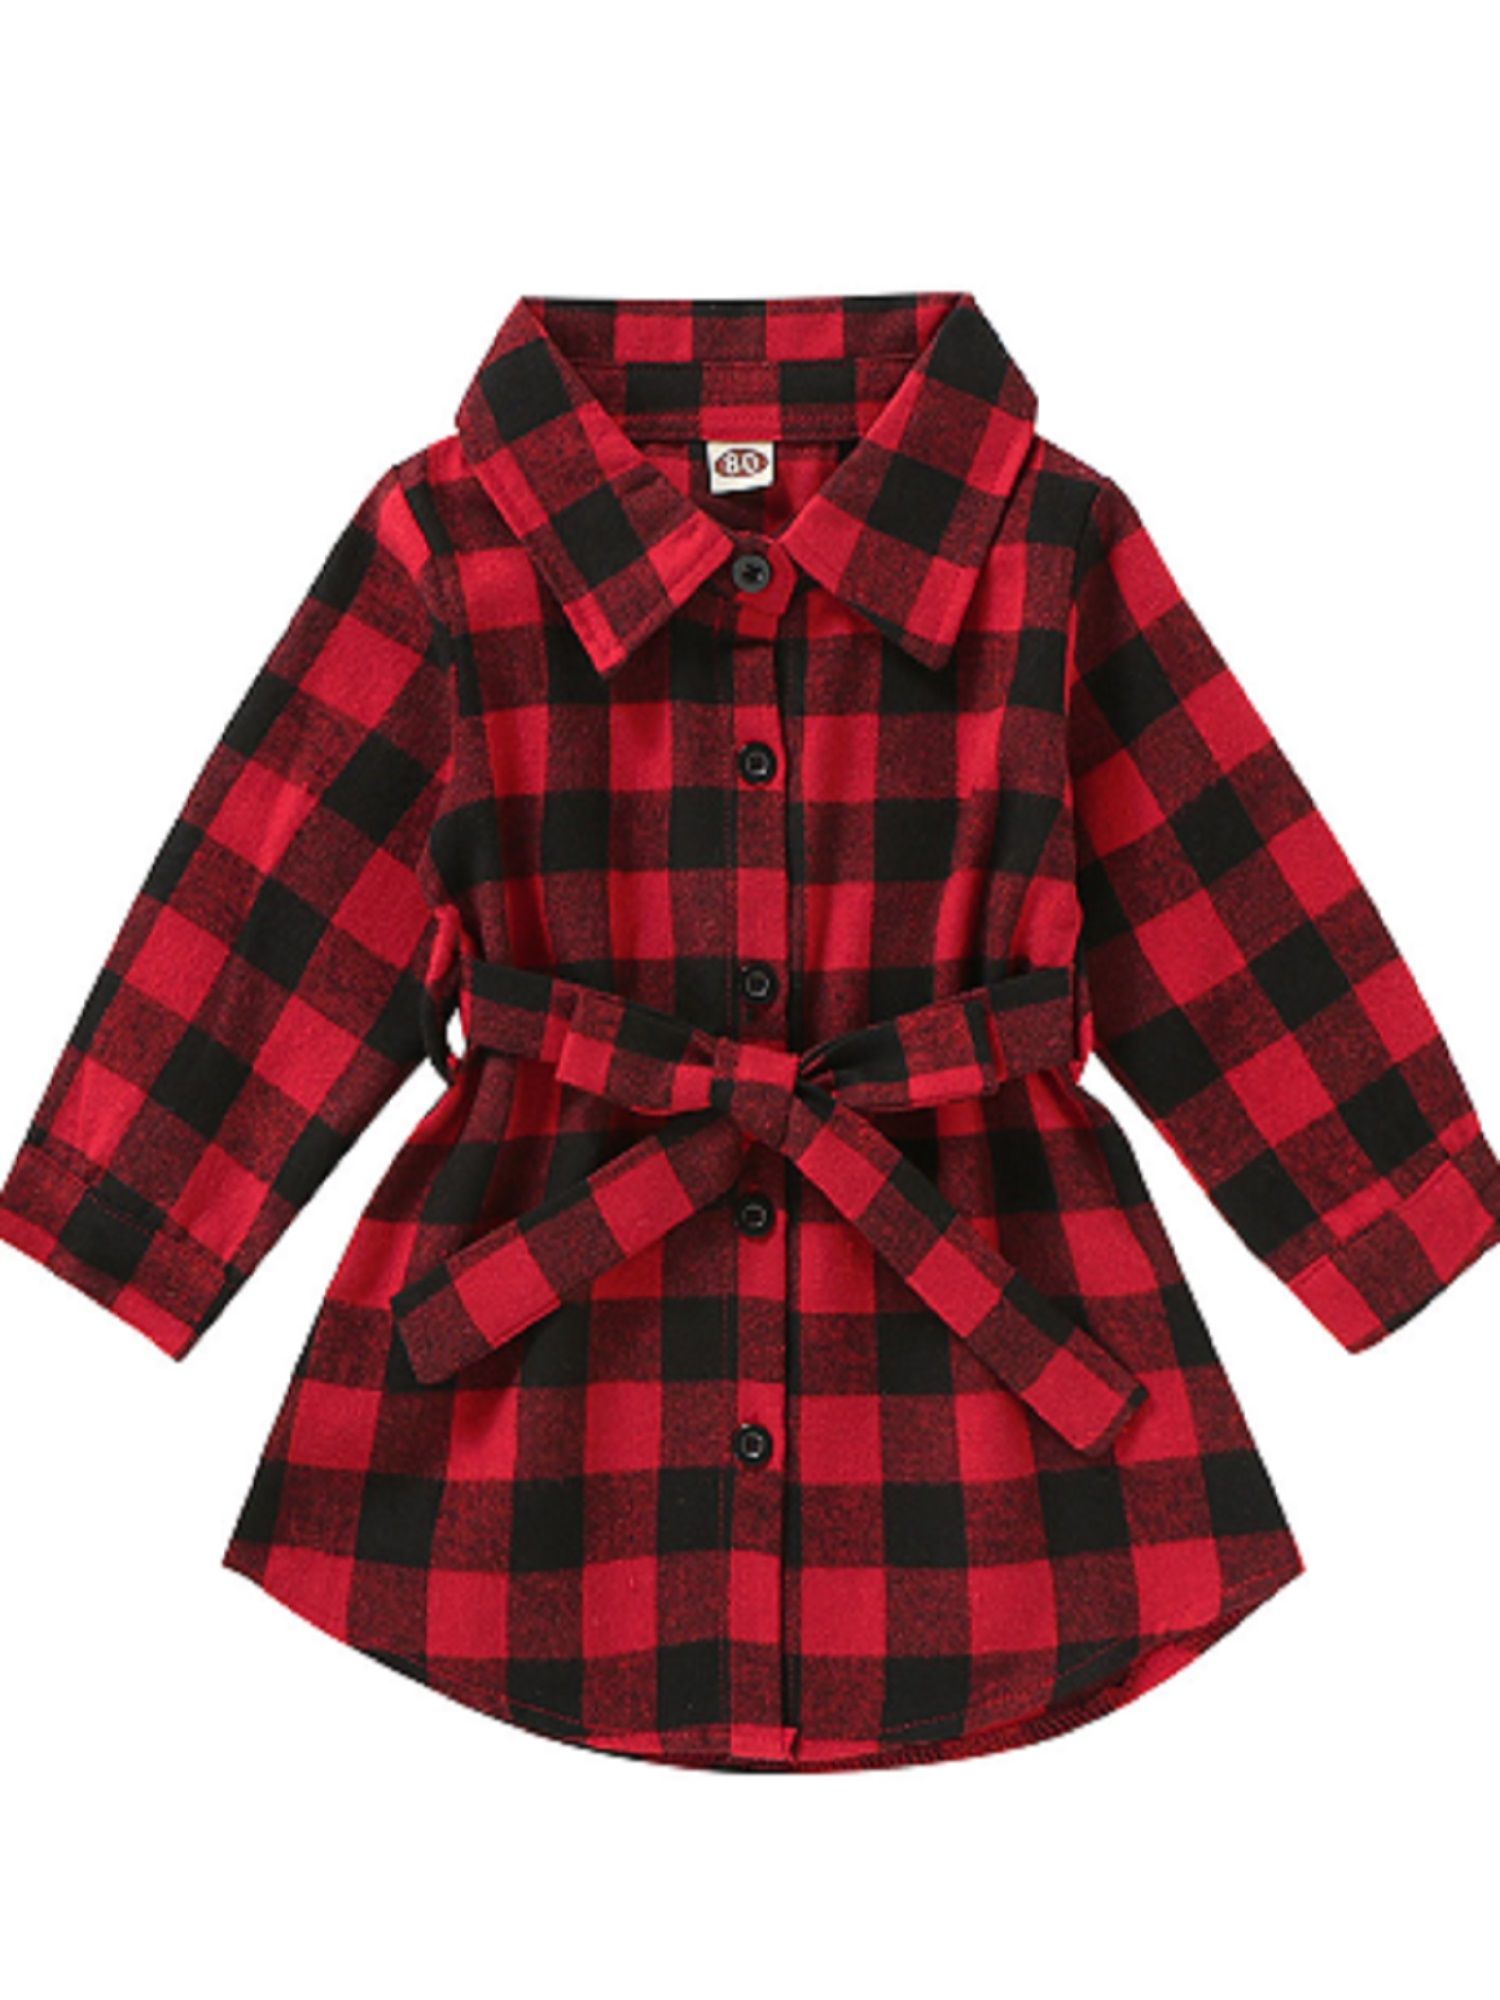 Toddler Baby Girls Christmas Red Tartan Dress Long Sleeve Plaid Belt Shirt Dress | Walmart (US)